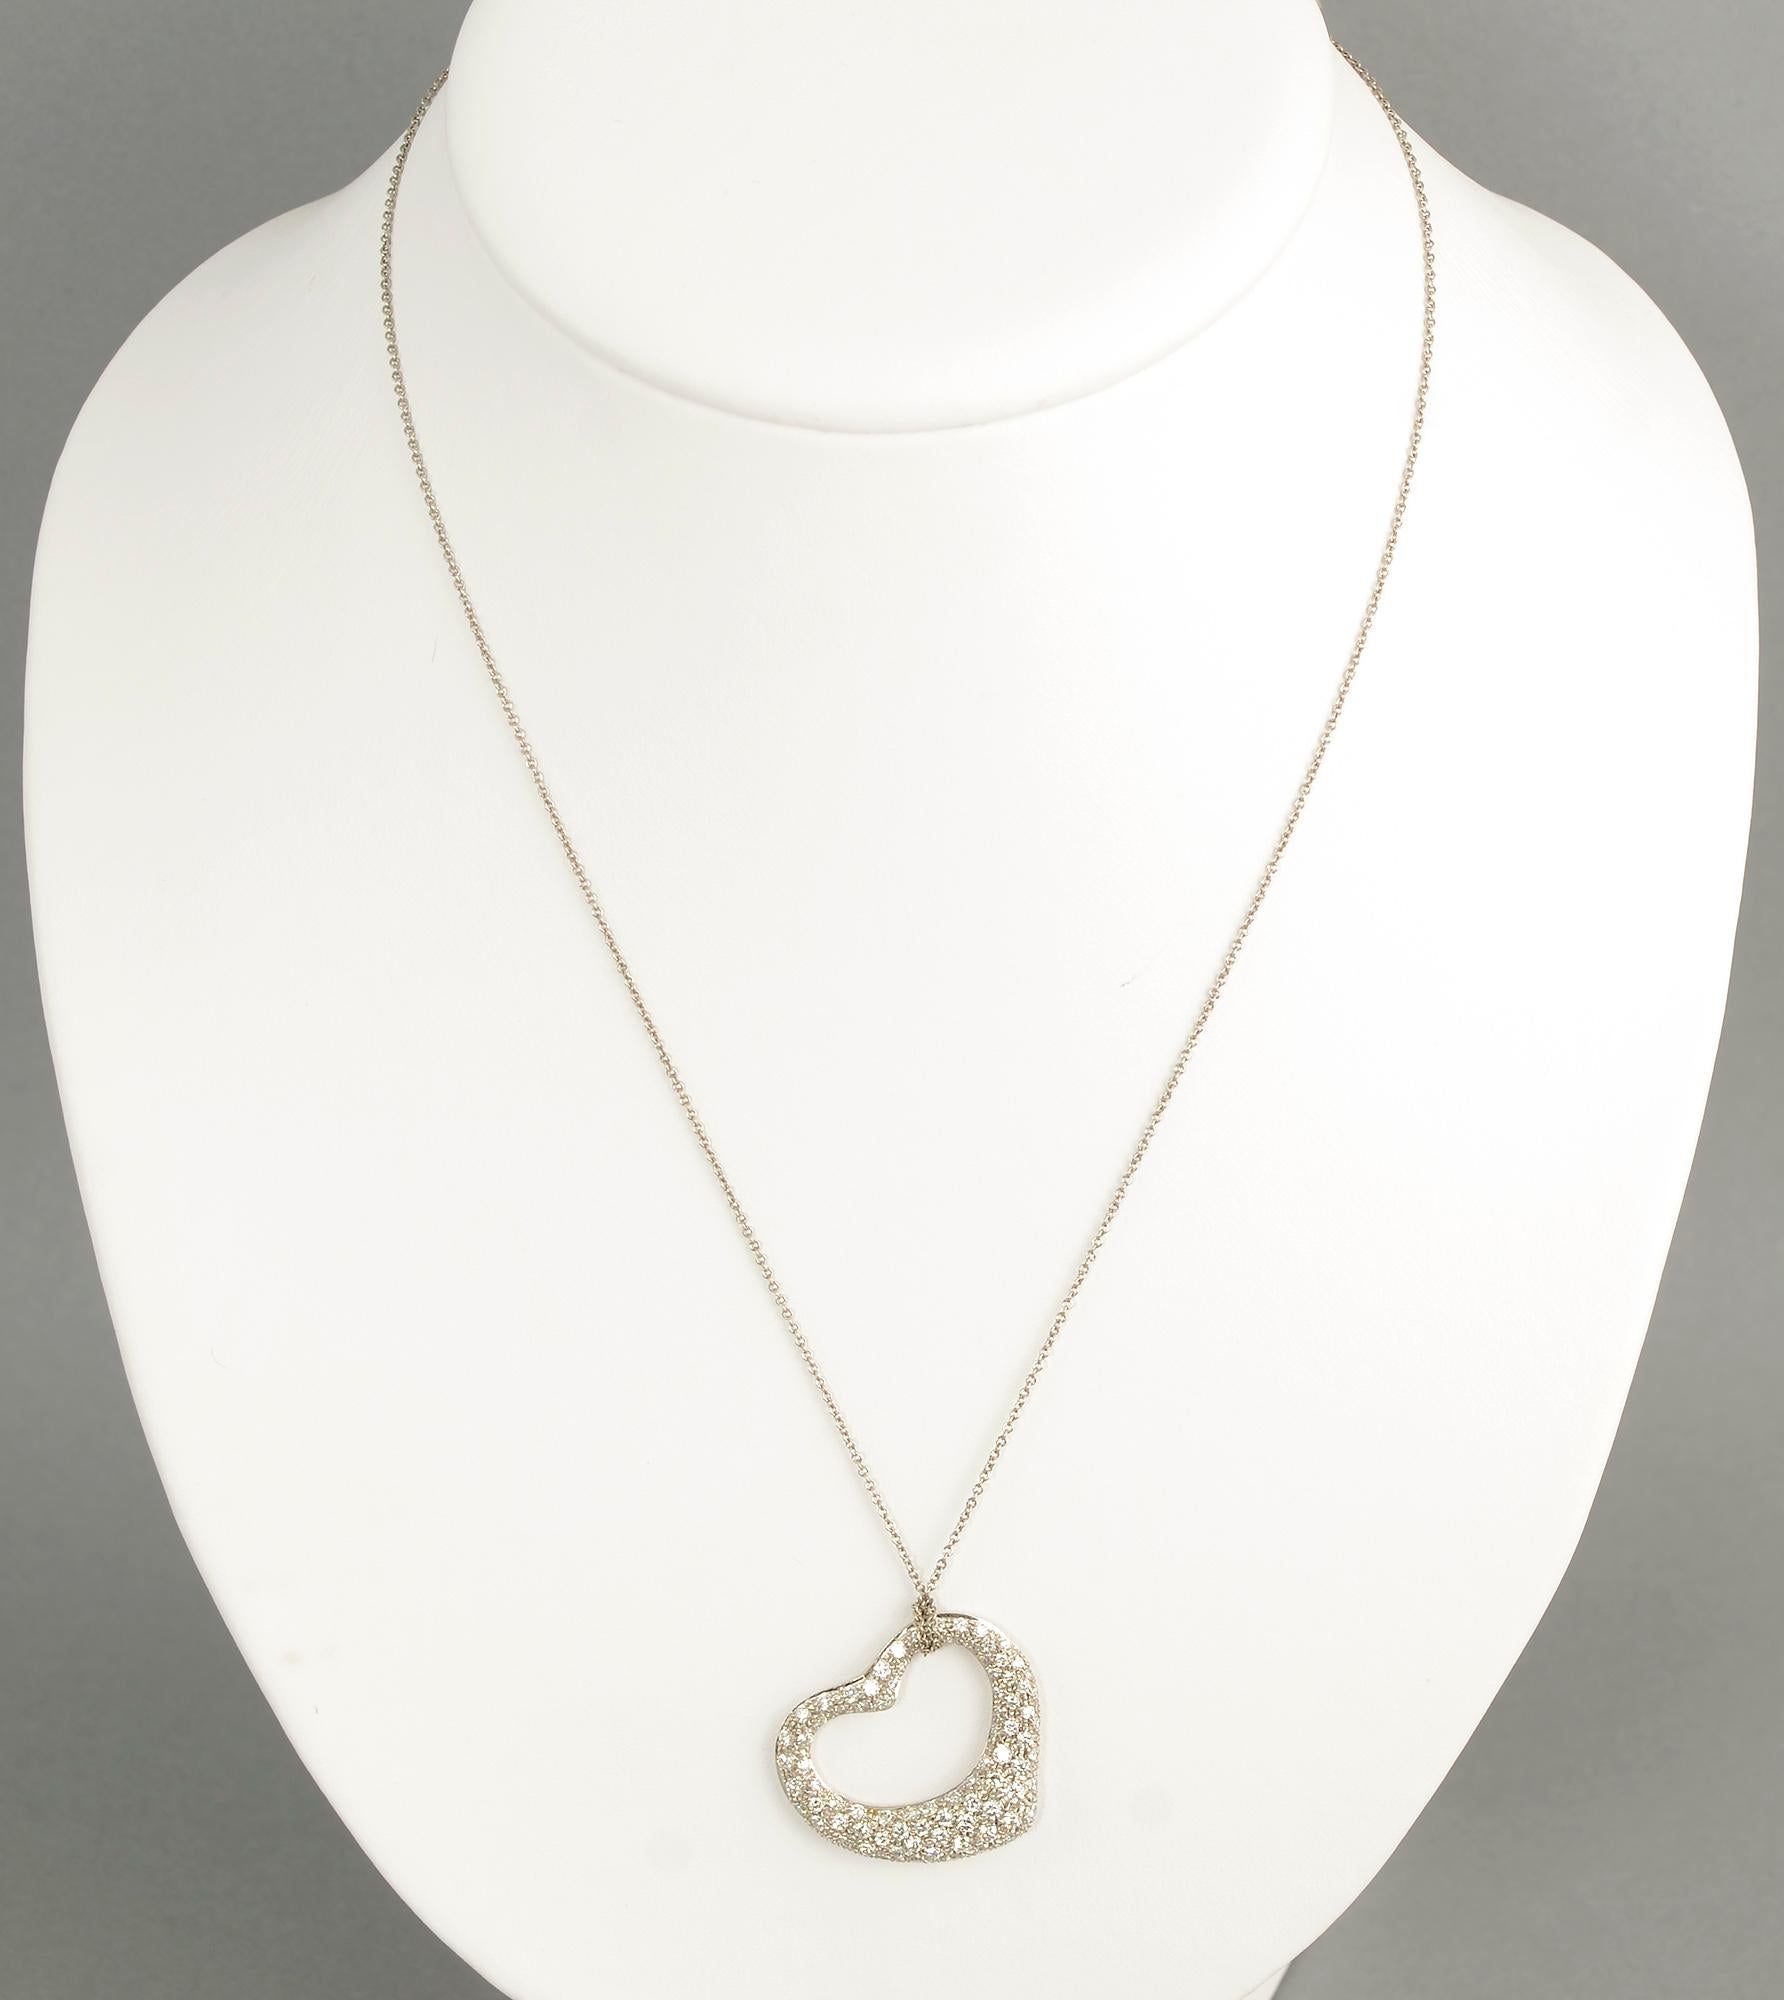 Paloma Picasso für Tiffany offener Herzanhänger an einer 18-Zoll-Platinkette. Es hat etwa 2 Karat Diamanten, die von IF bis VS 2 Qualität reichen; Farbe ist G bis J. Die Diamanten sind in Platin gefasst. Das Herz wird in der originalen